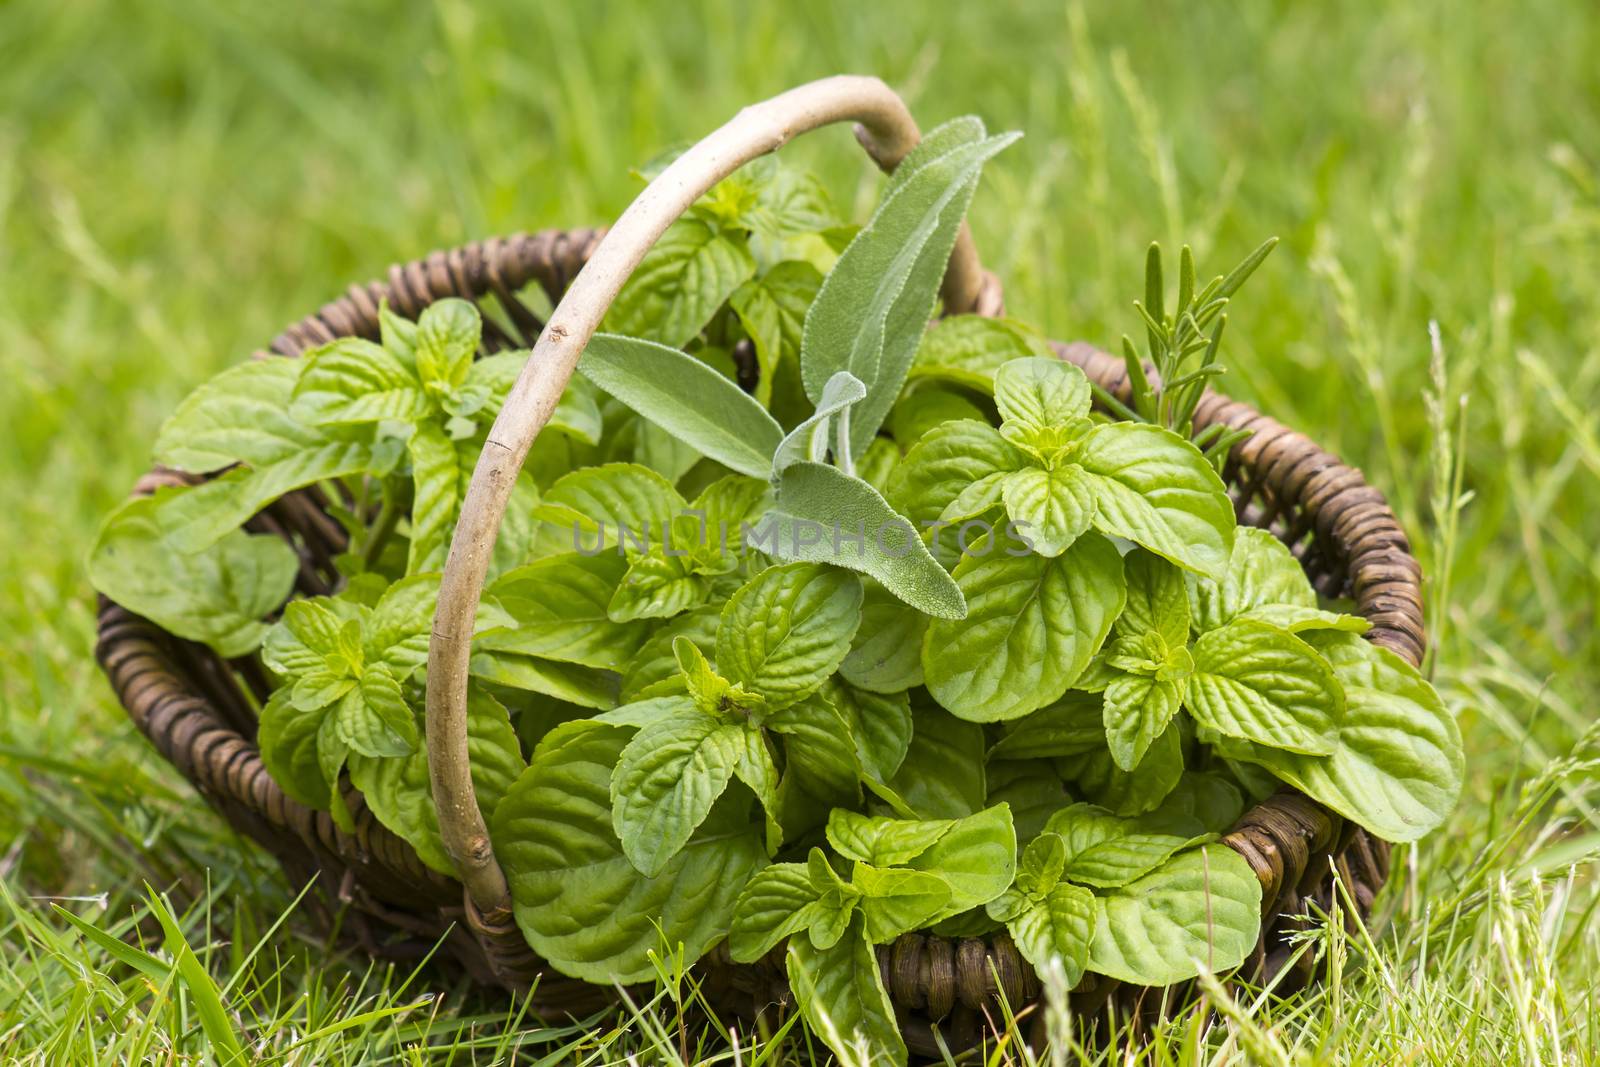 Basket with fresh herbs in herb garden by miradrozdowski